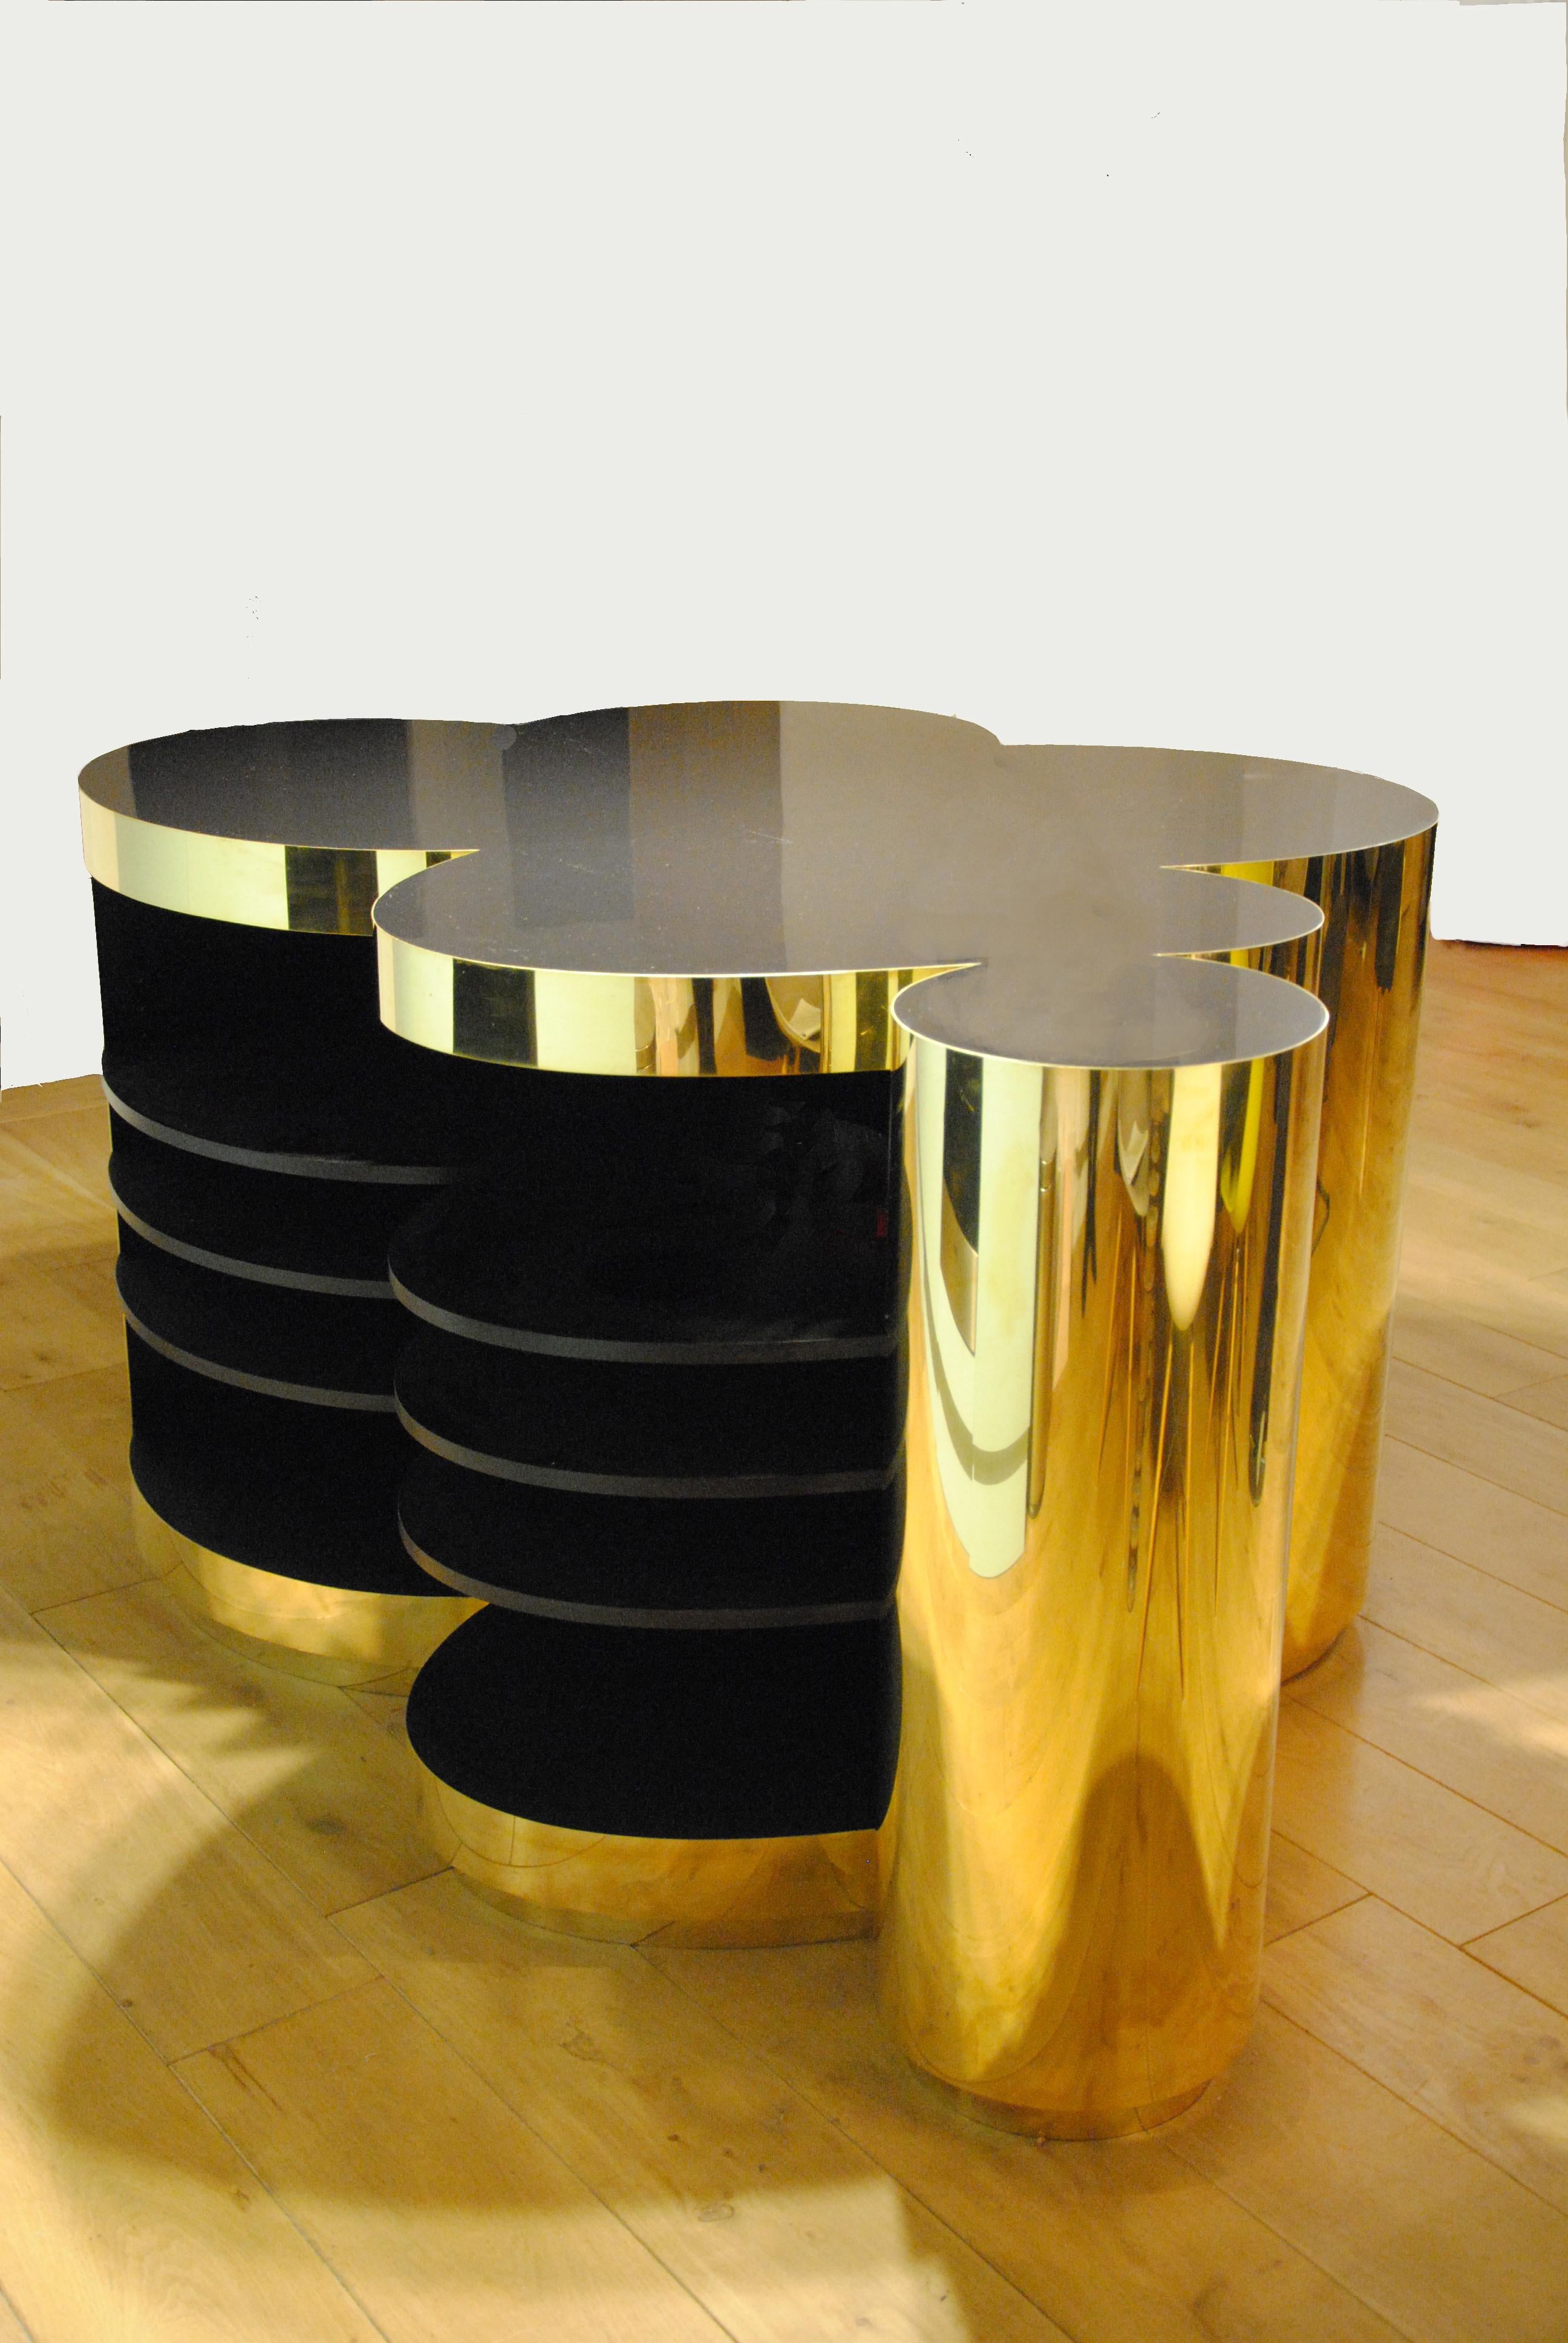 Massive brass and black stone
Unique piece
created in 2016.